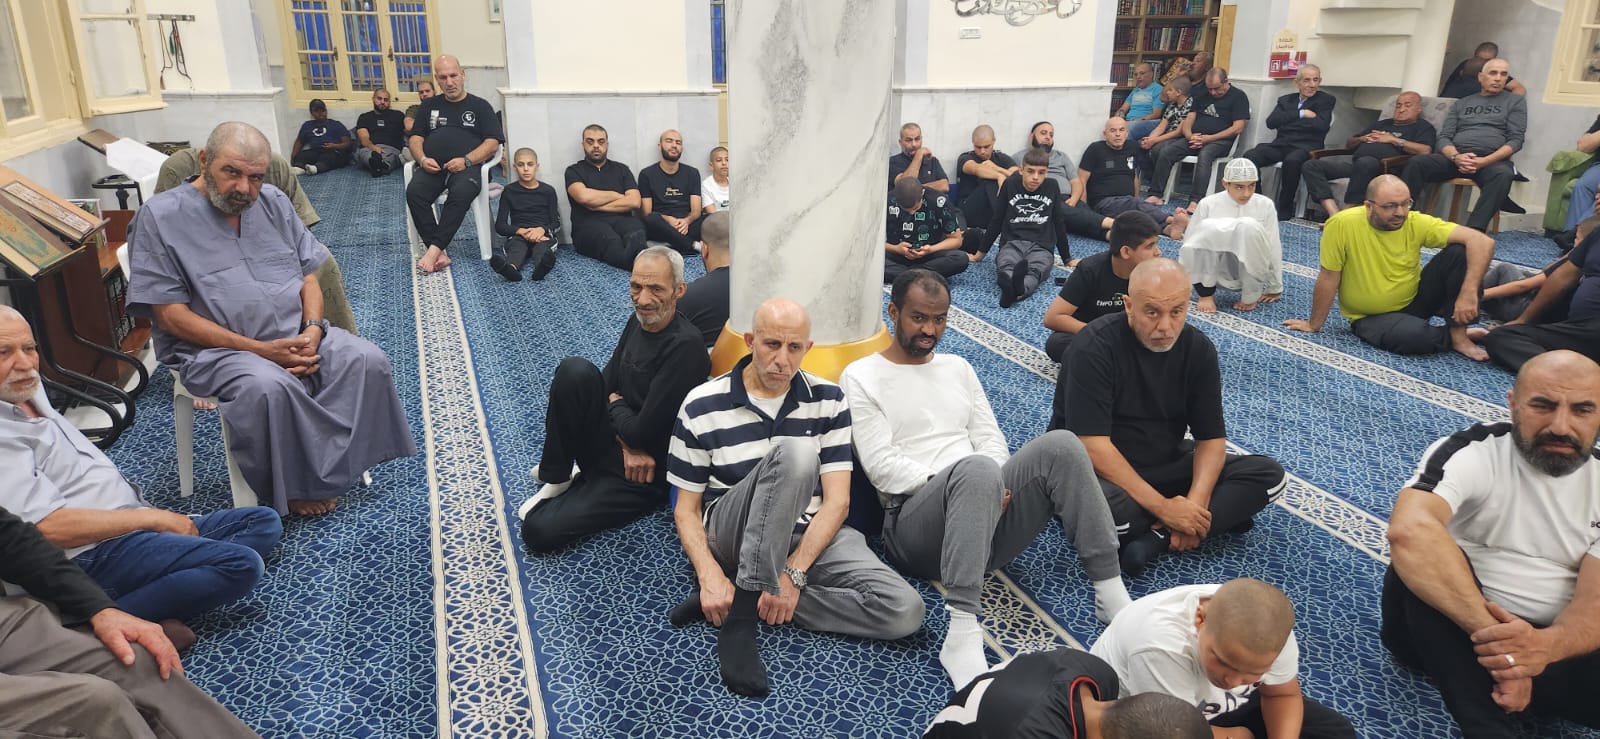 يافا: الشيخ أبو بكر عثمان ضيفًا على مجالس الإيمان في مسجد النزهة